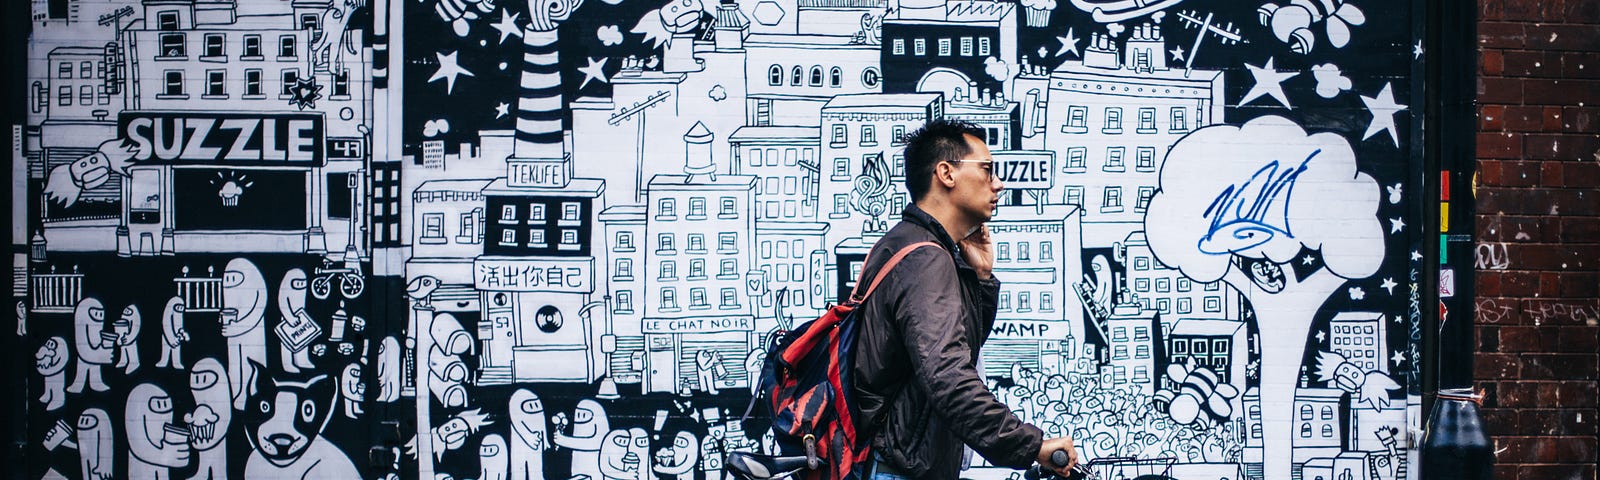 homme marchant avec son vélo, il téléphone. En arrière plan, fresque murale évoquant l’écosystème saturé de la ville.